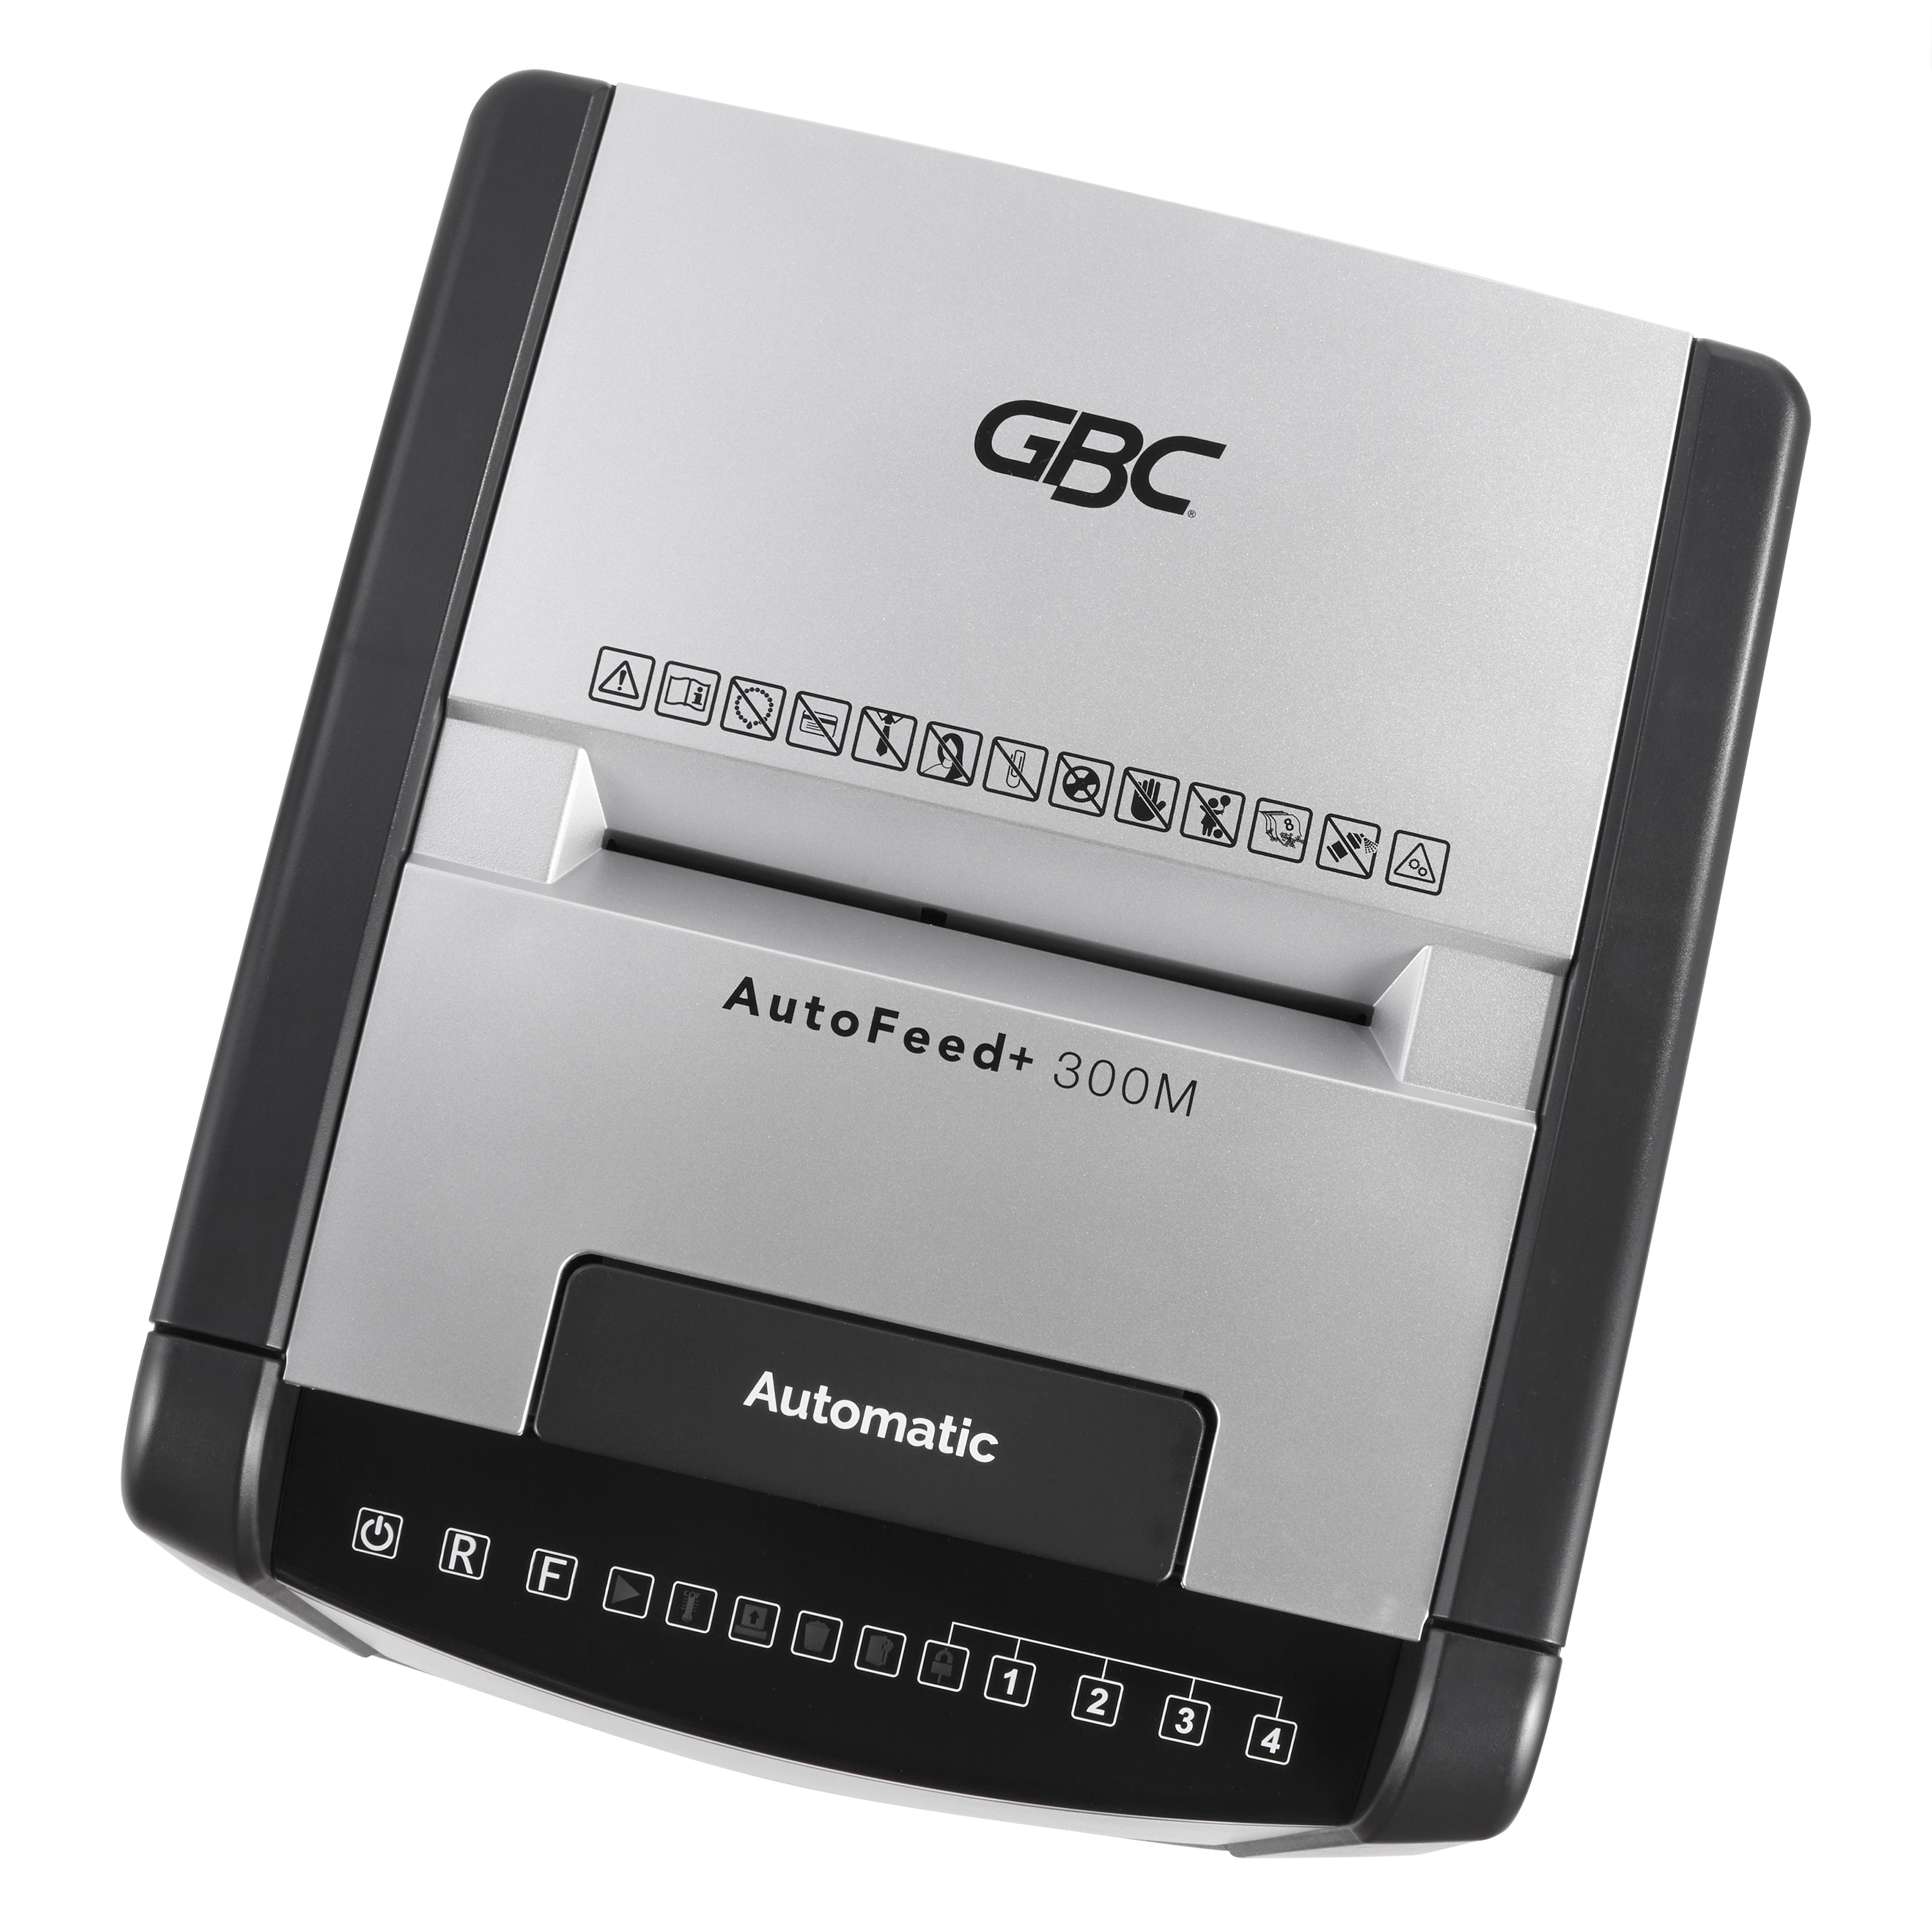 GBC 300M Office Autofeed+ Shredder